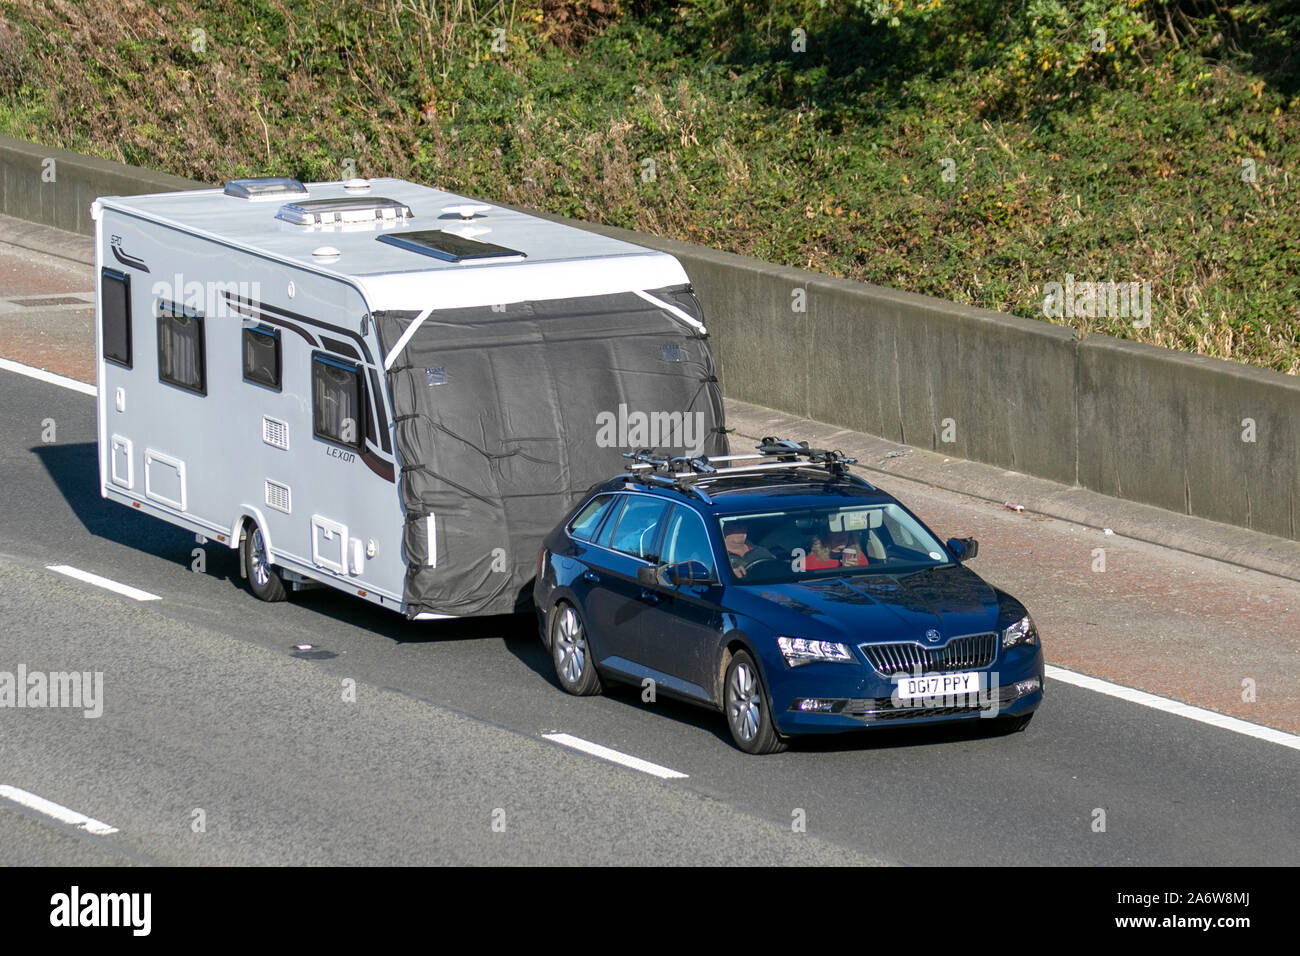 2017 BLUE Škoda Superb SE TDI towing caravan; UK Vehicular traffic, transport, modern vehicles, saloon cars, south-bound on the 3 lane M6 motorway highway. Stock Photo